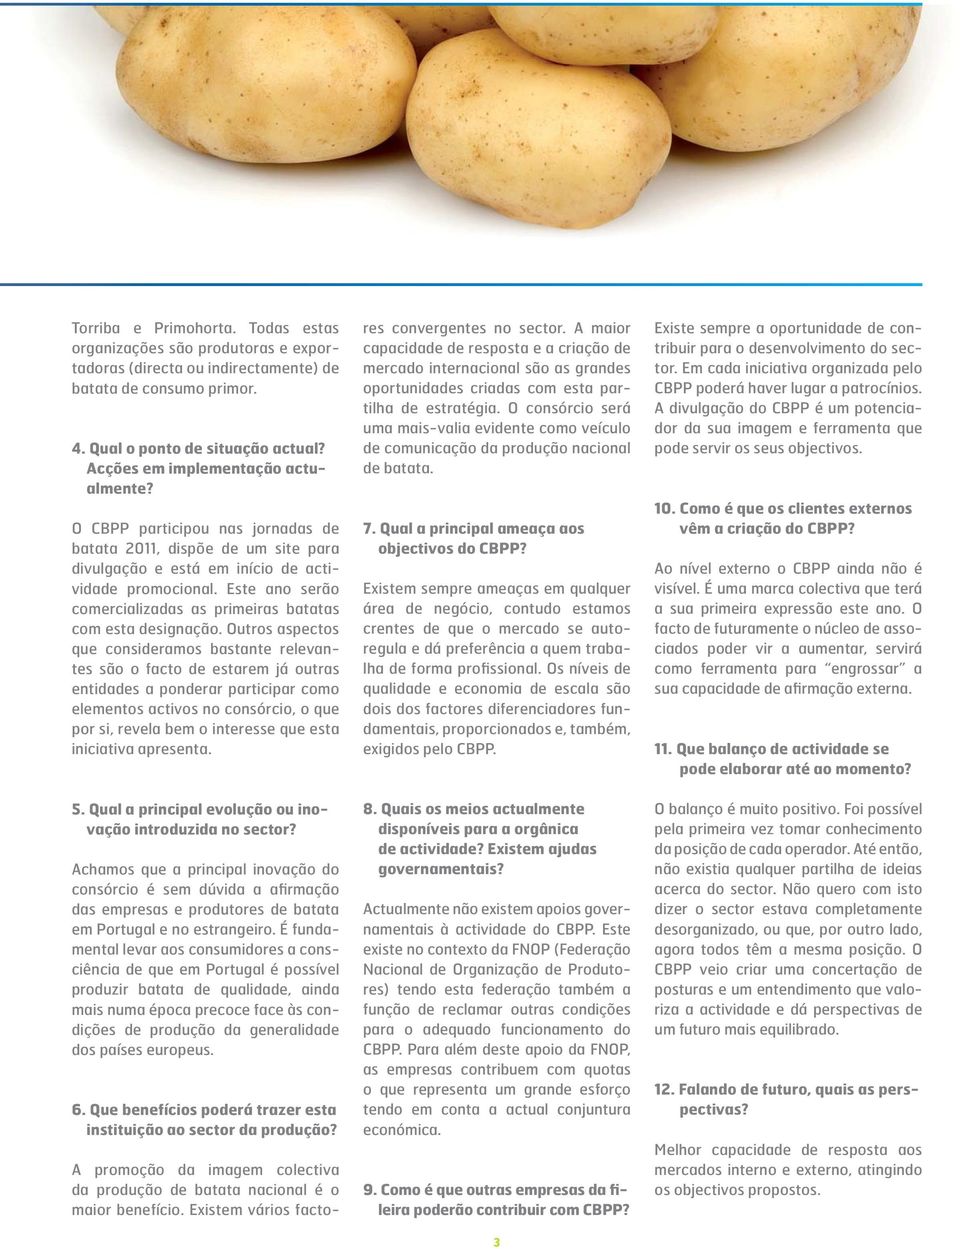 Este ano serão comercializadas as primeiras batatas com esta designação.